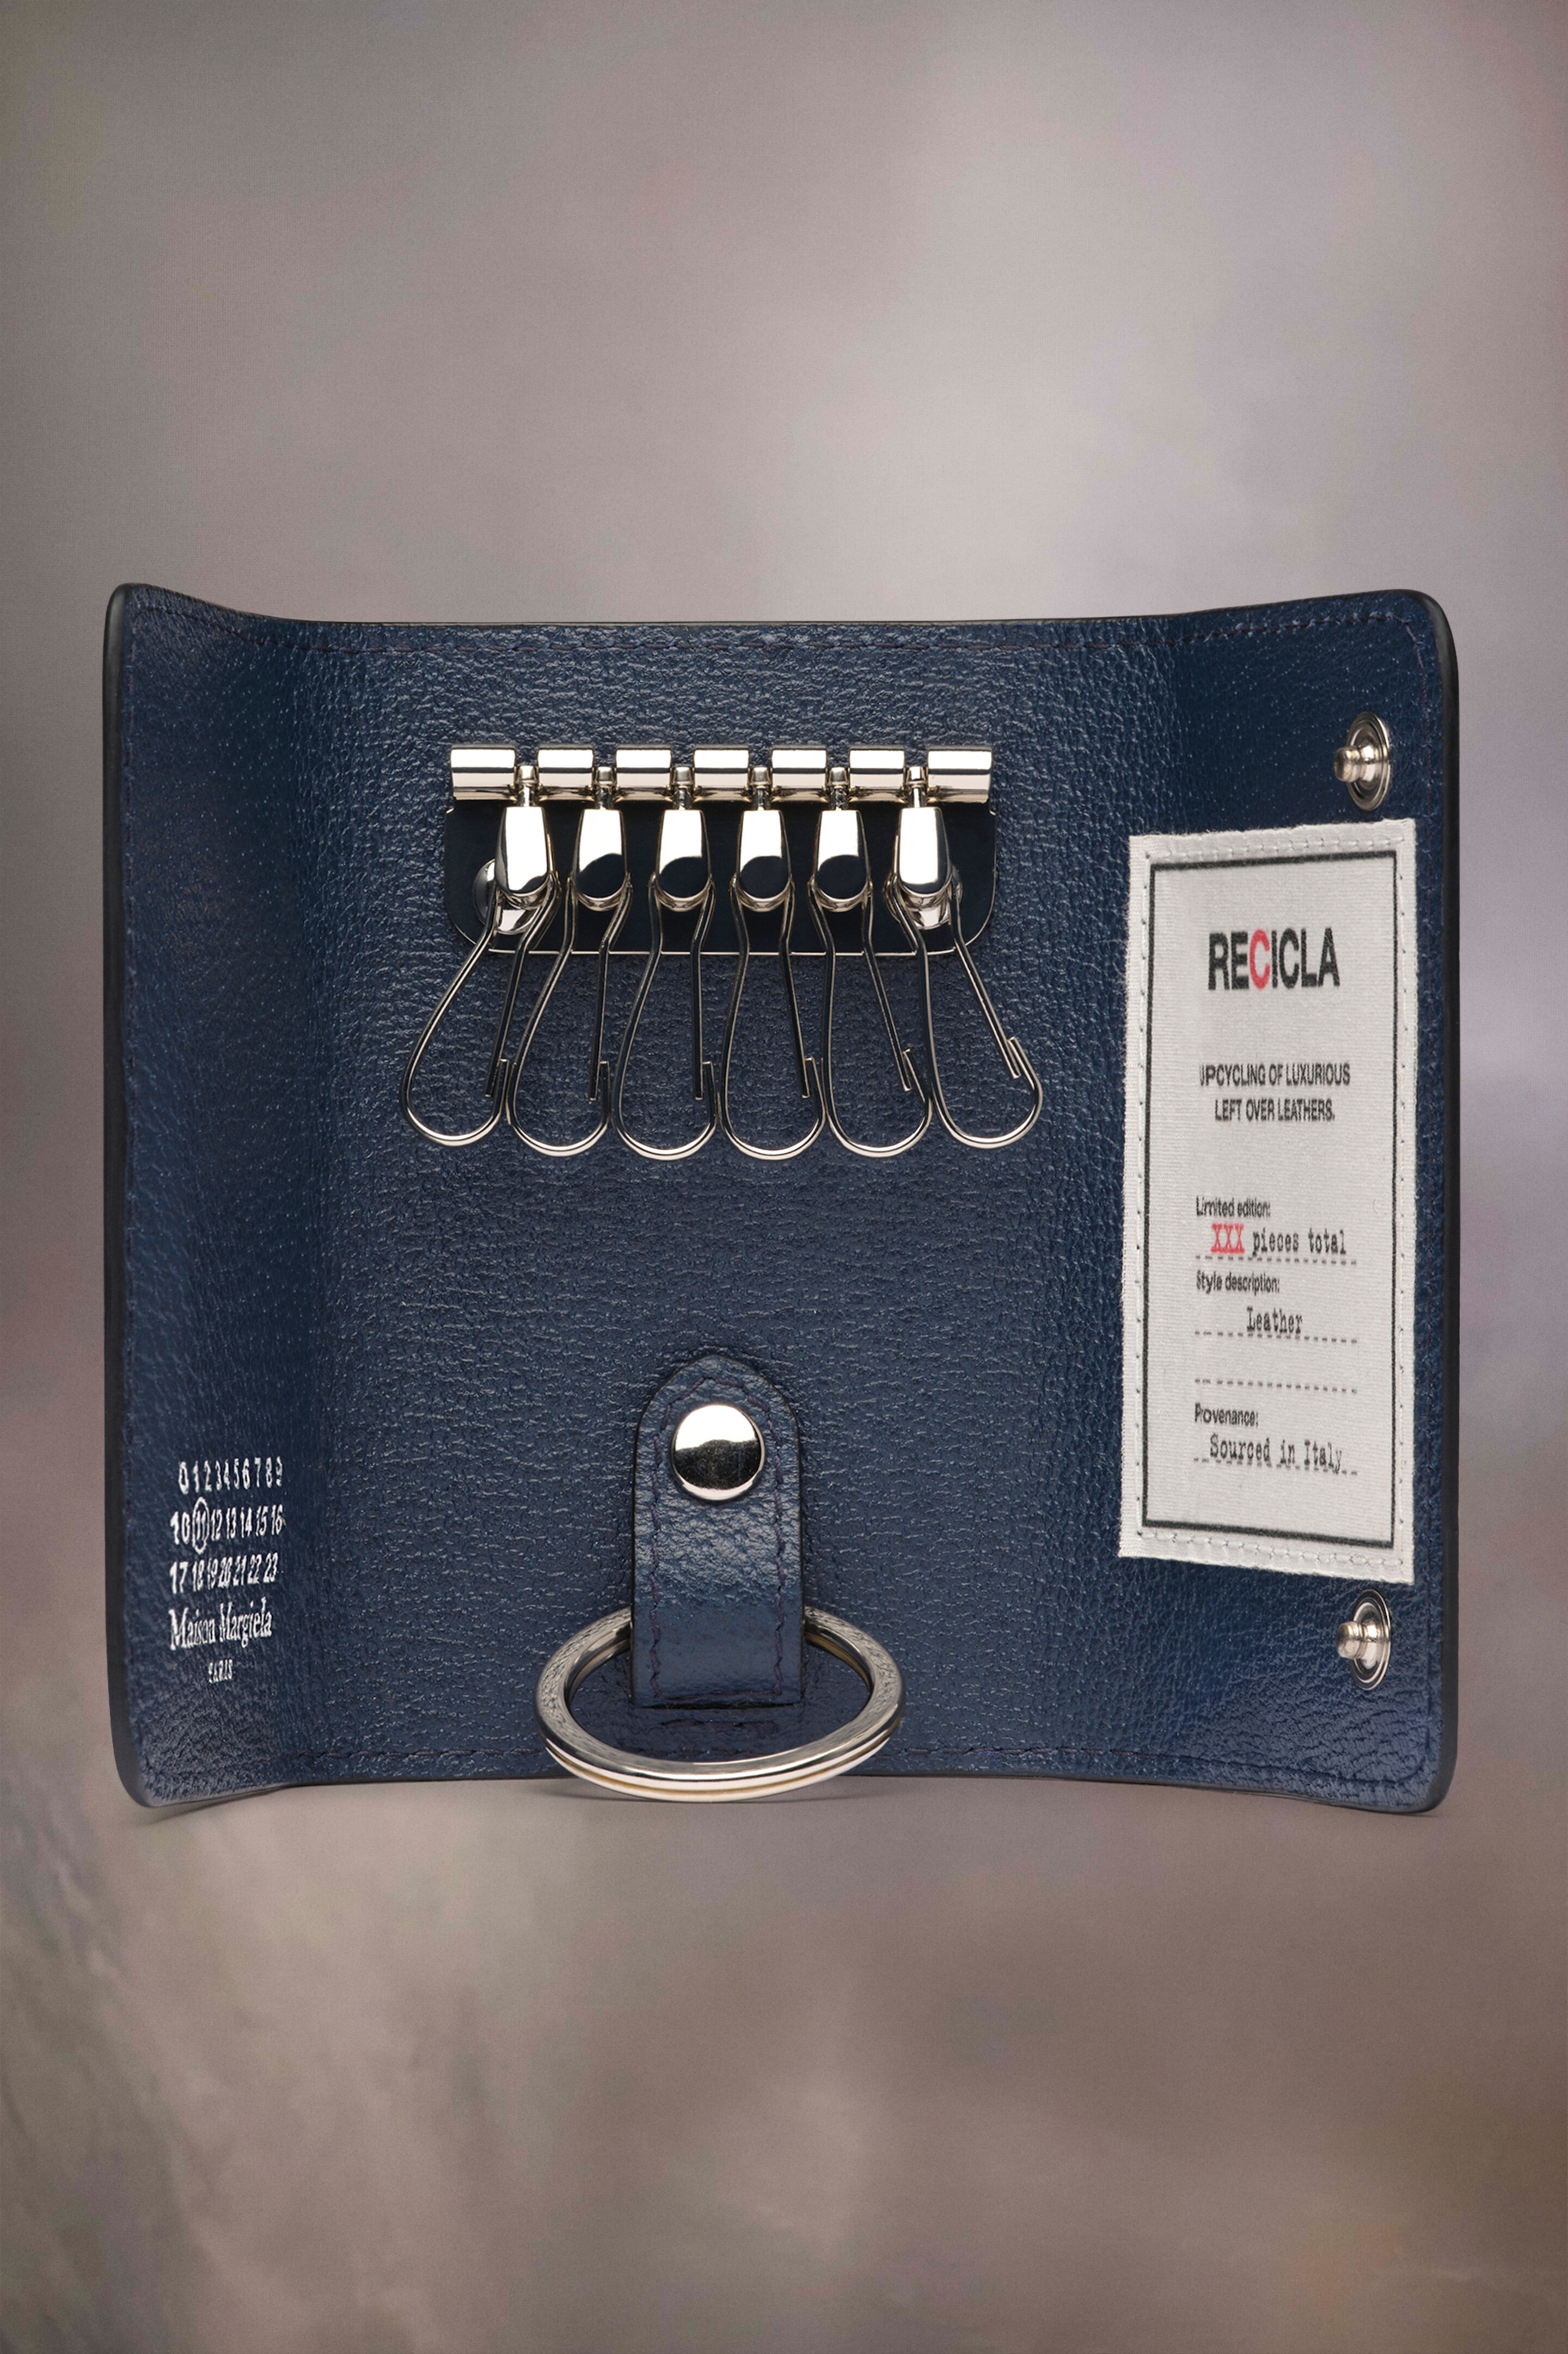 Recicla key chain wallet - 2